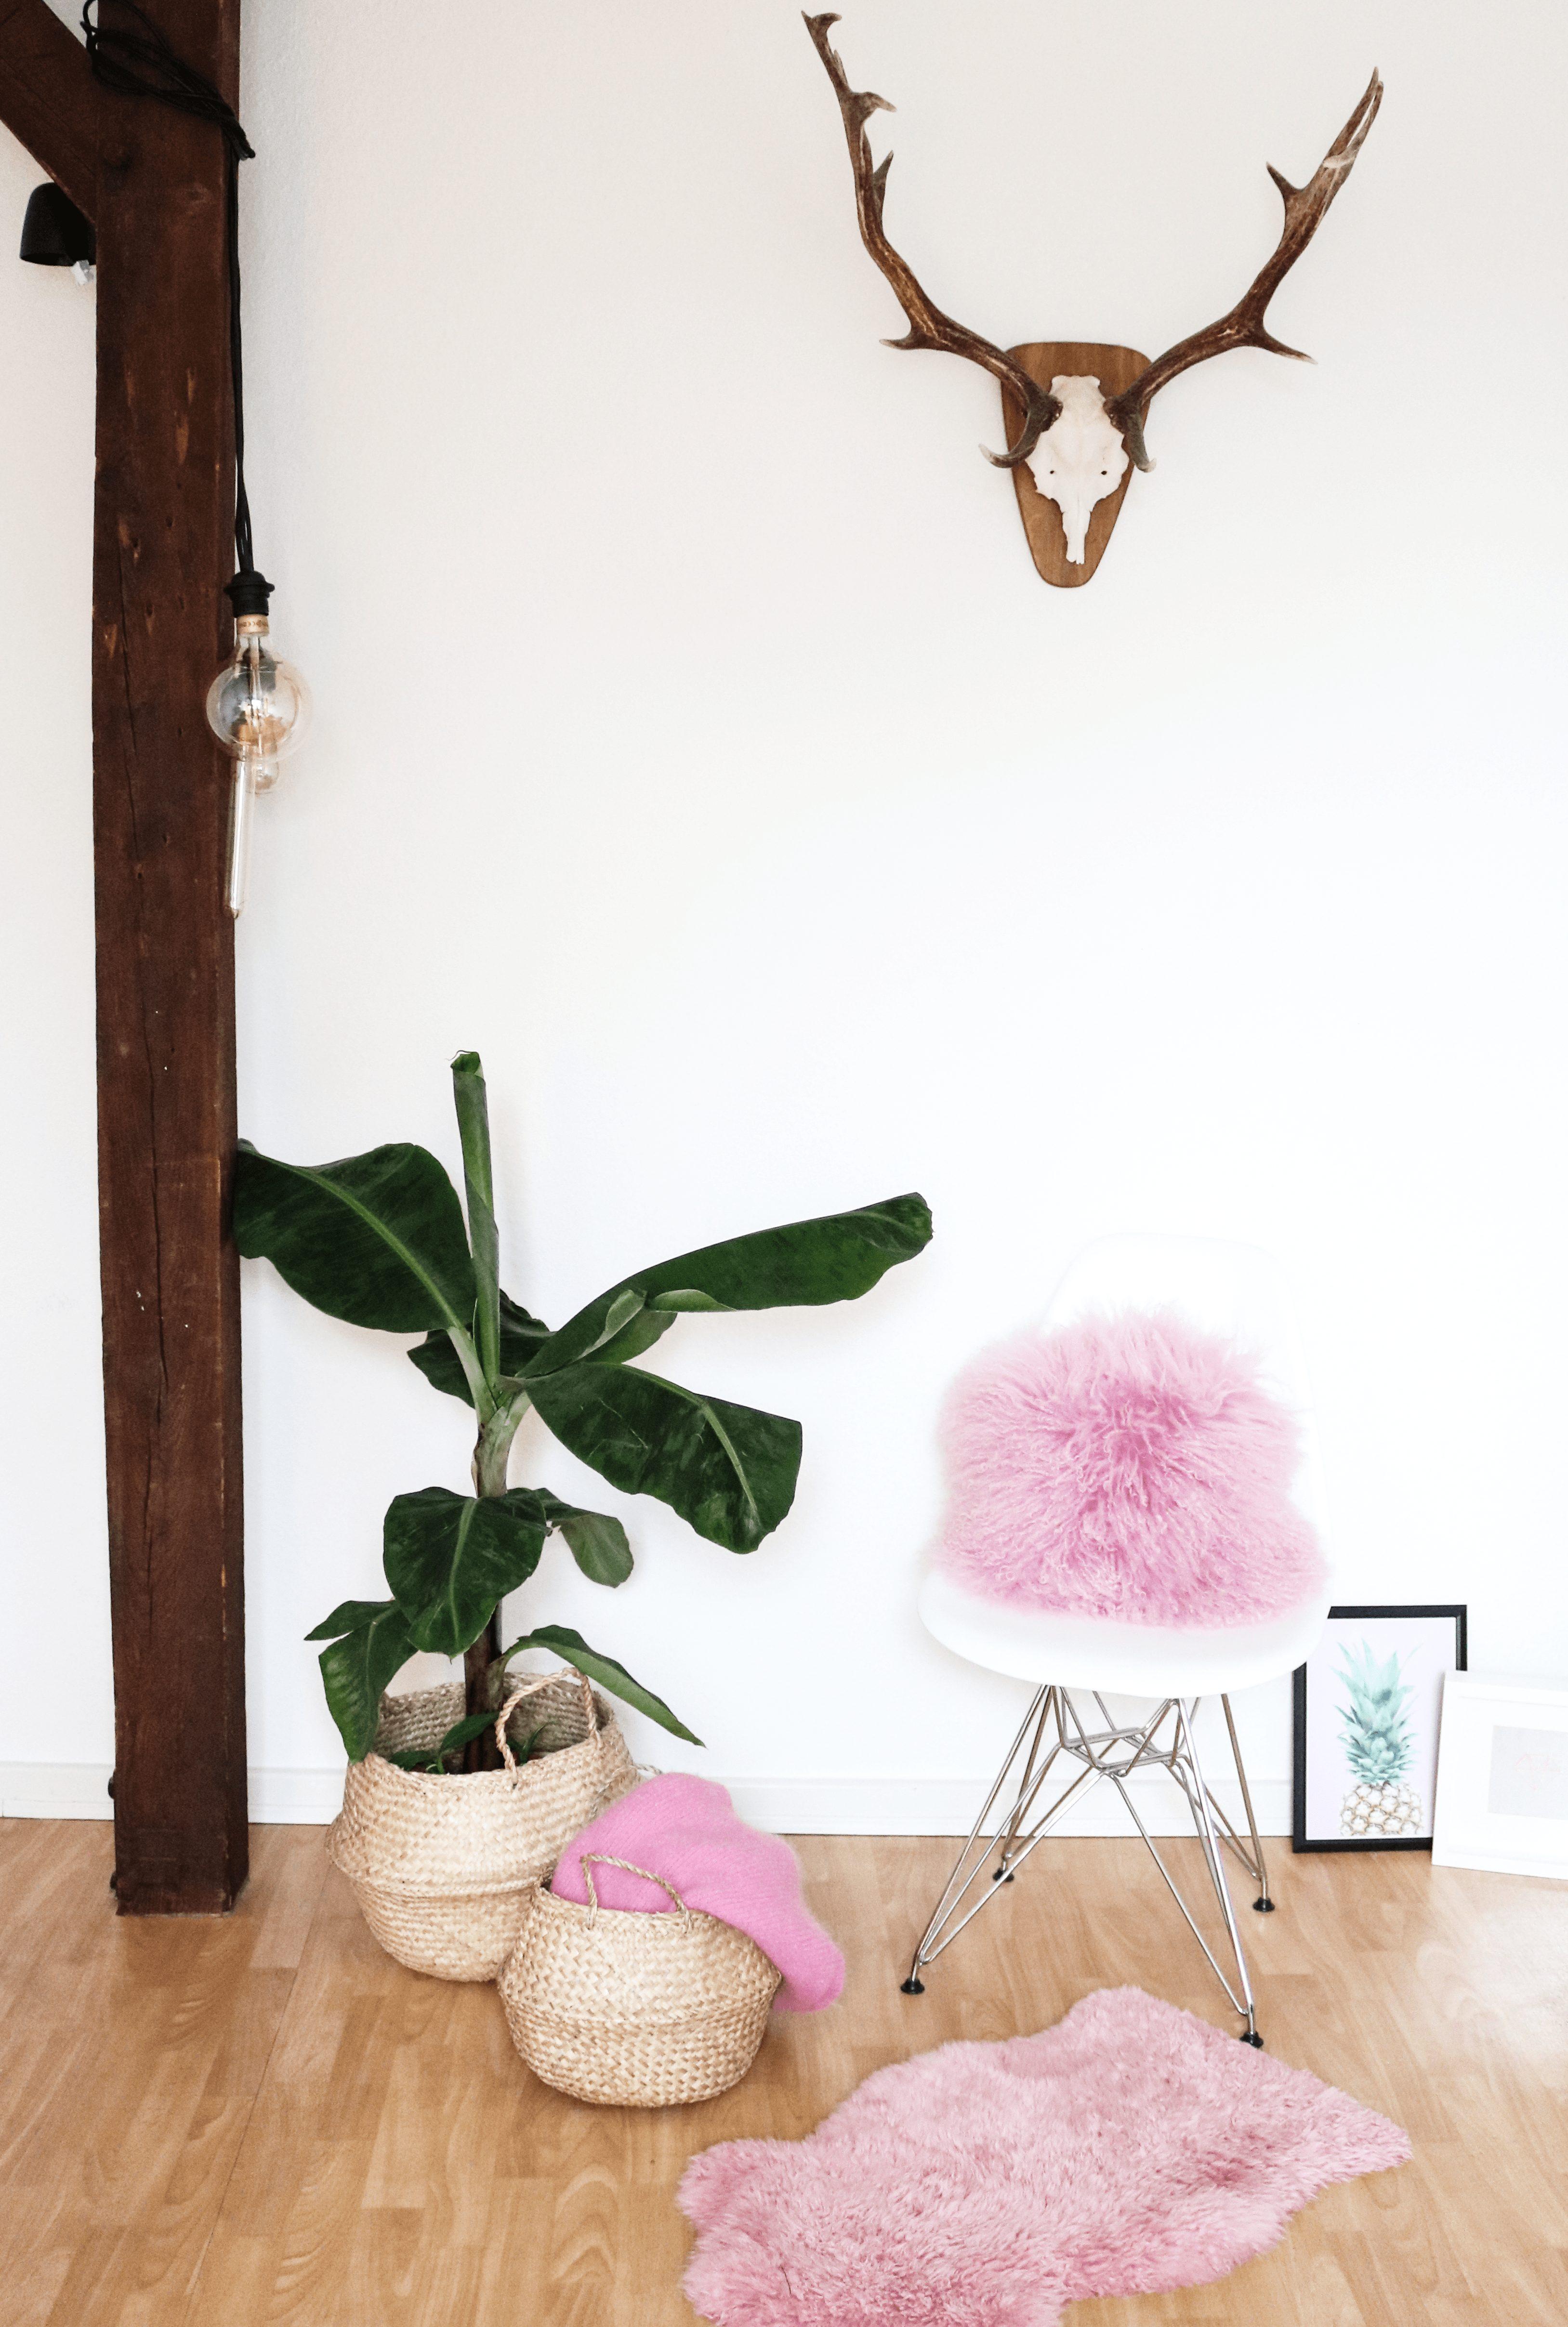 Wir sind ganz entzückt von den #pinken #Farbtupfern in unserer Wohnung. 💖
#couchliebt #skandistyle #wohnzimmer 